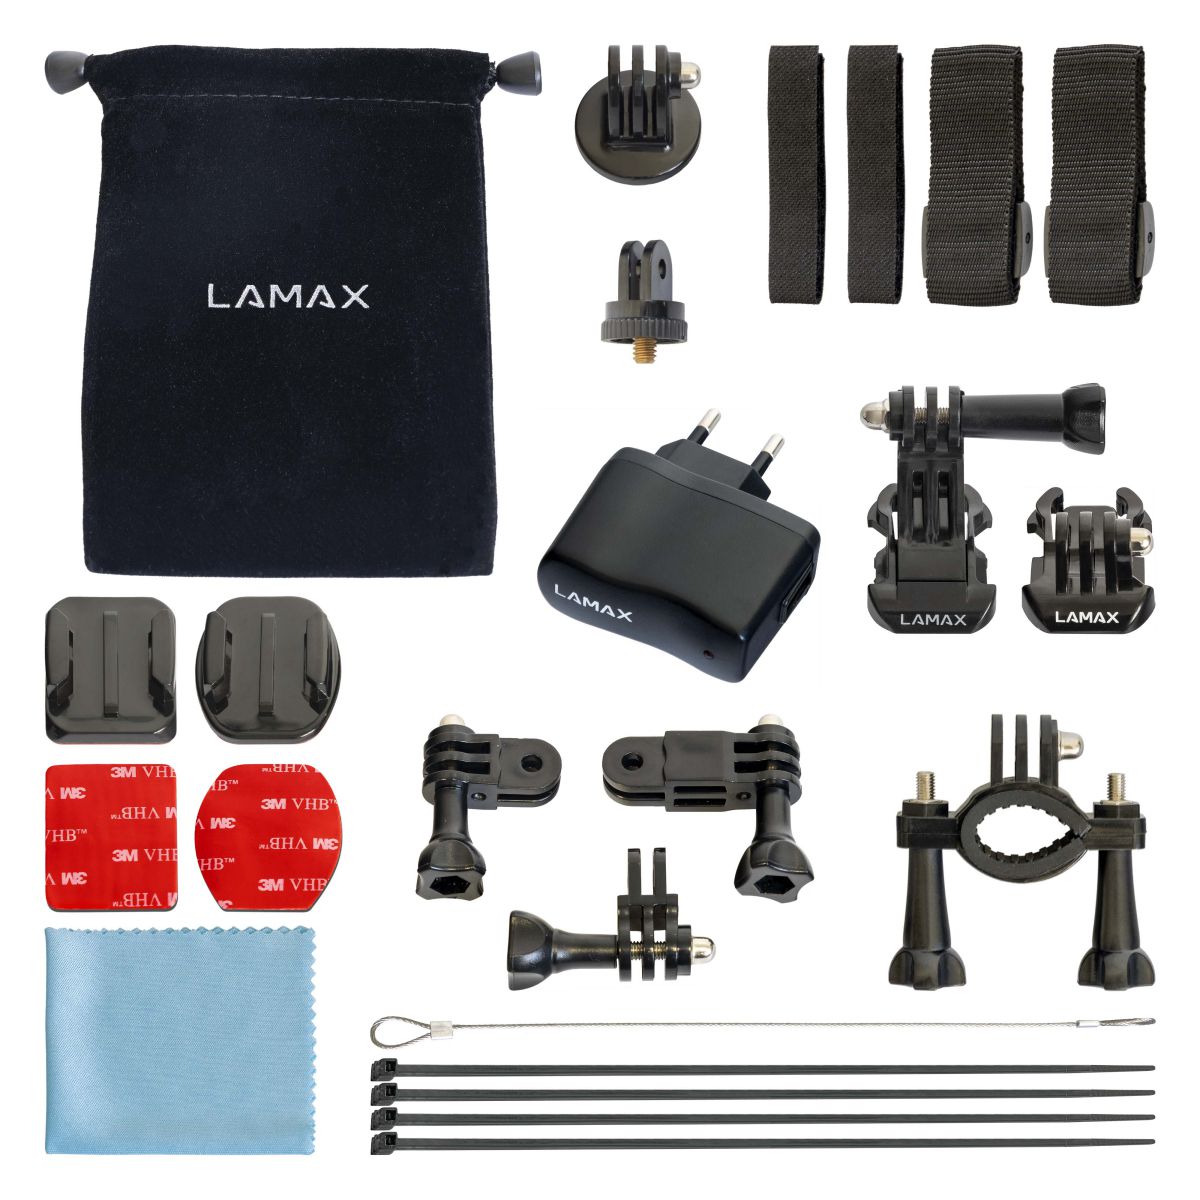 LAMAX Sada příslušenství pro akční kamery L - Sada 15 kusů příslušenství pro akční kamery